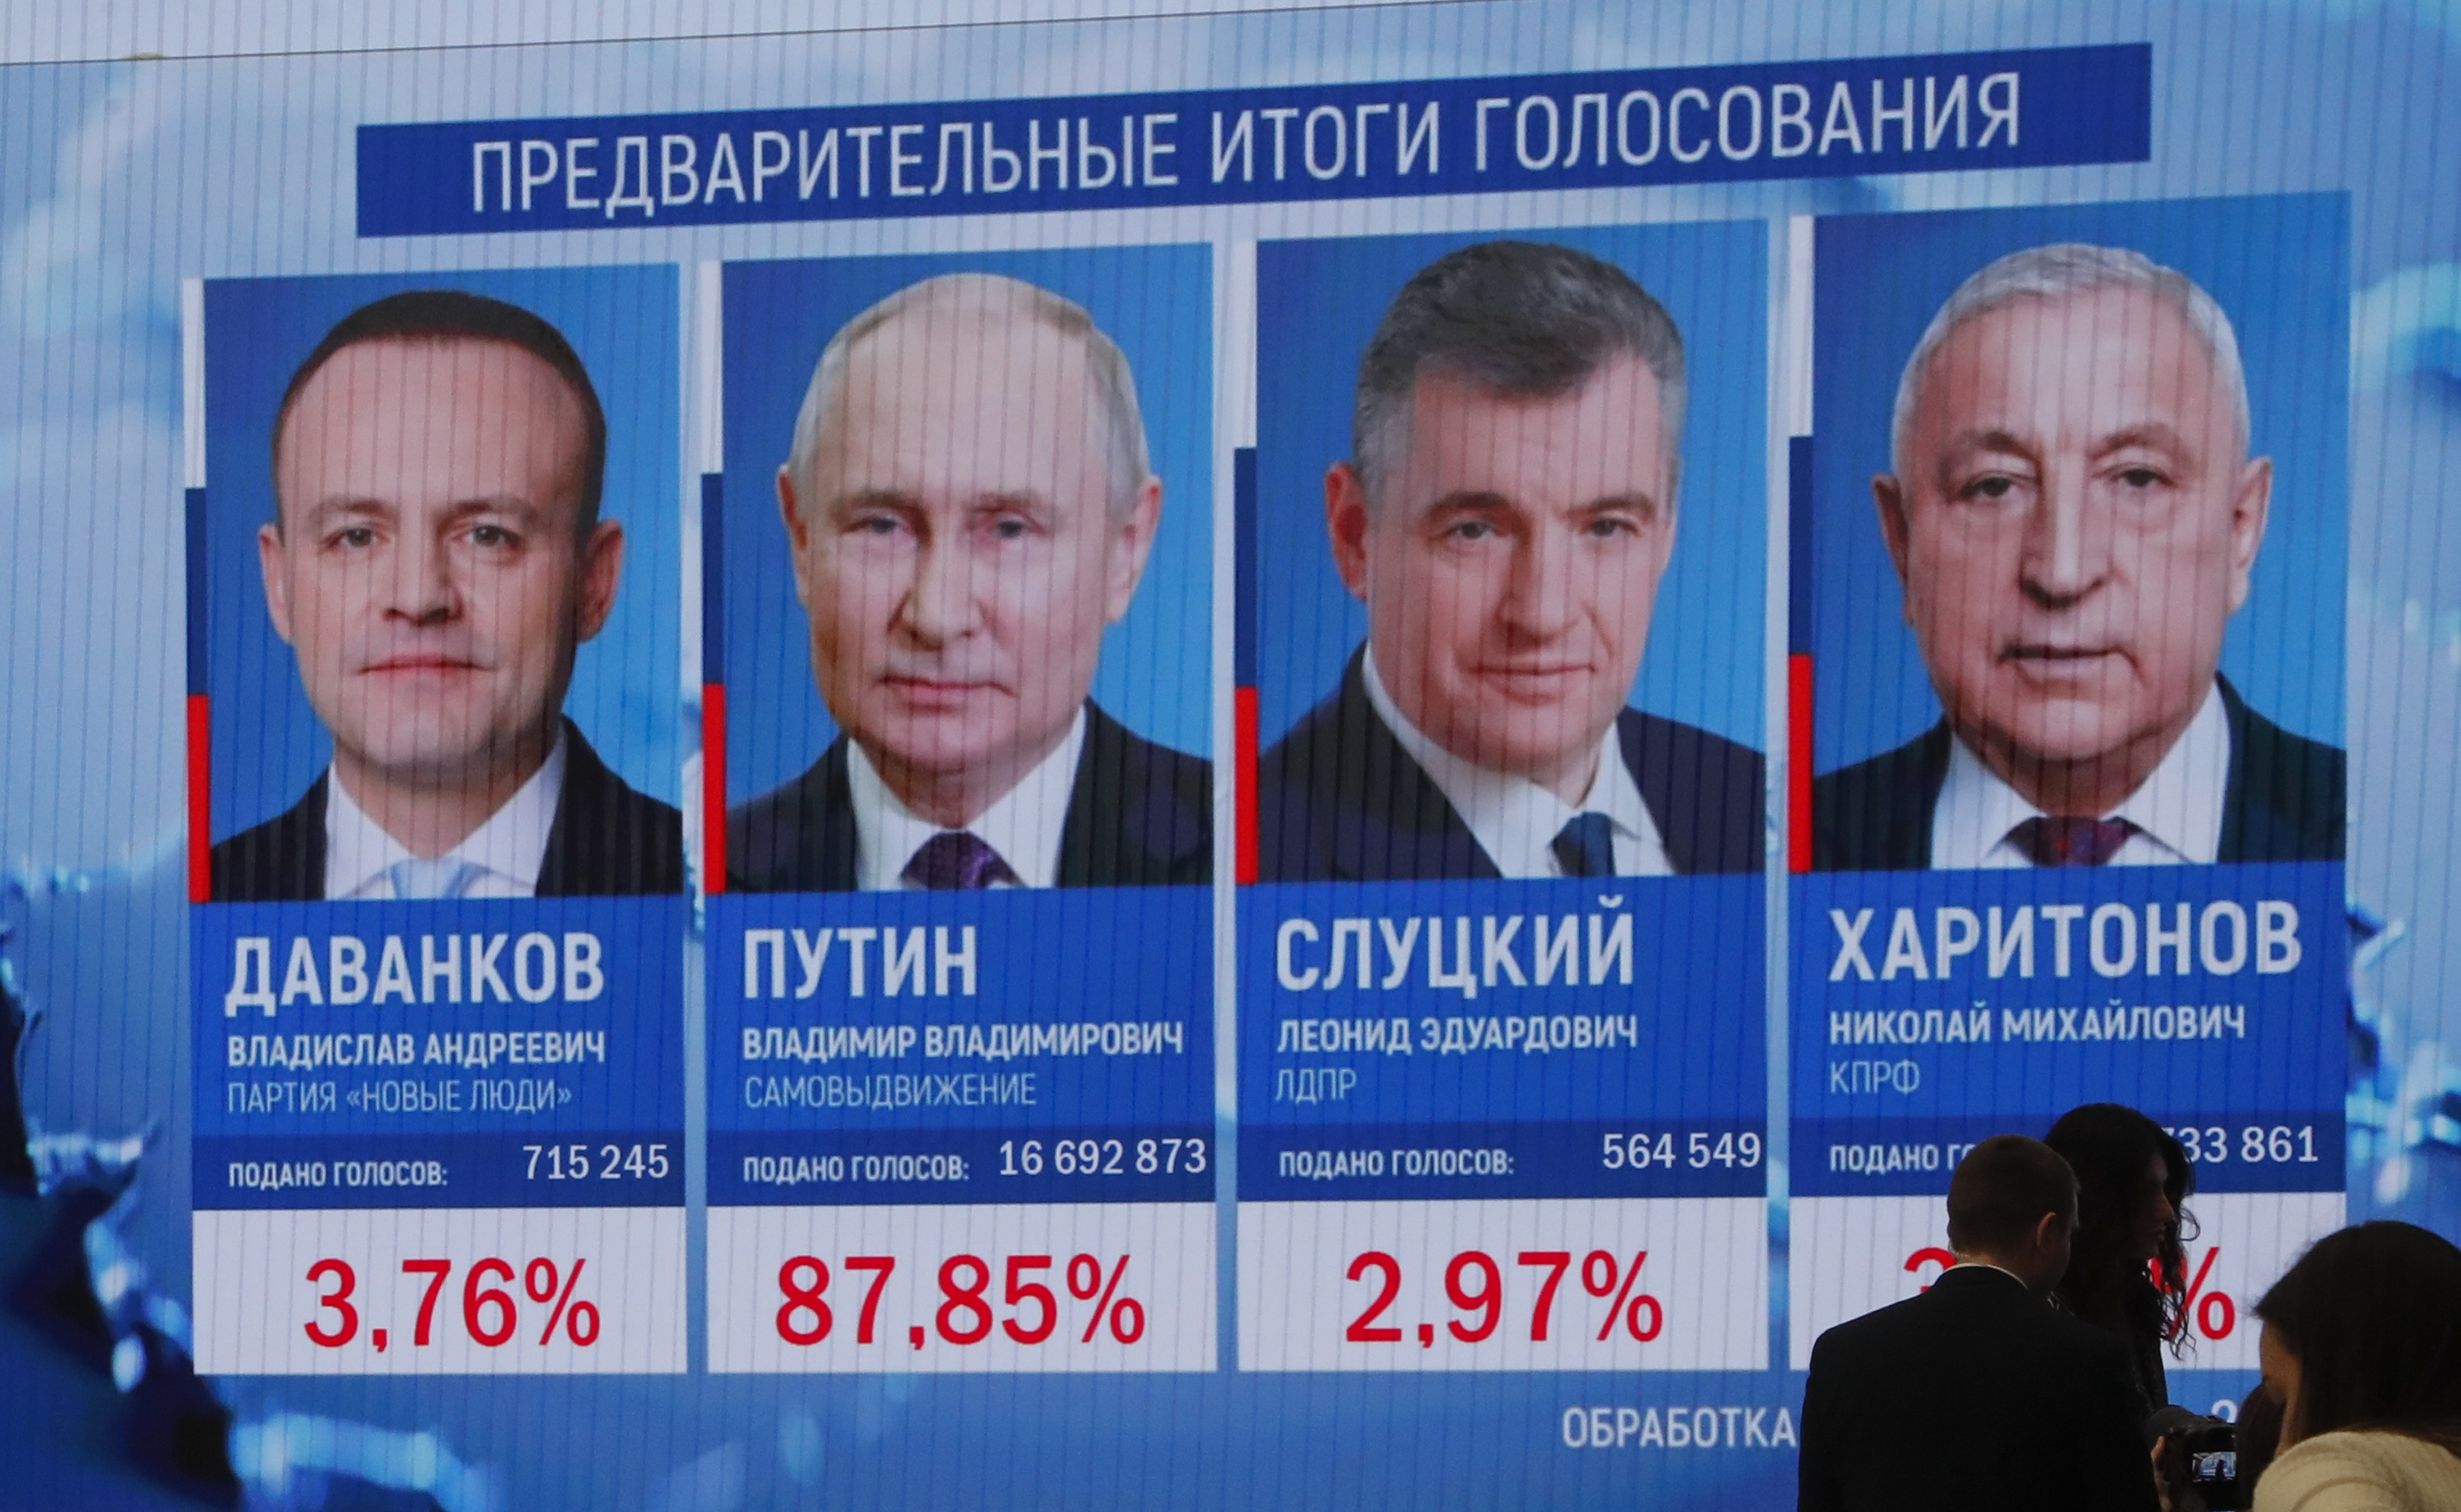 Putin sería el ganador de las elecciones rusas, según los resultados preliminares presentados. (Foto Prensa Libre: EFE/EPA/MAXIM SHIPENKOV)